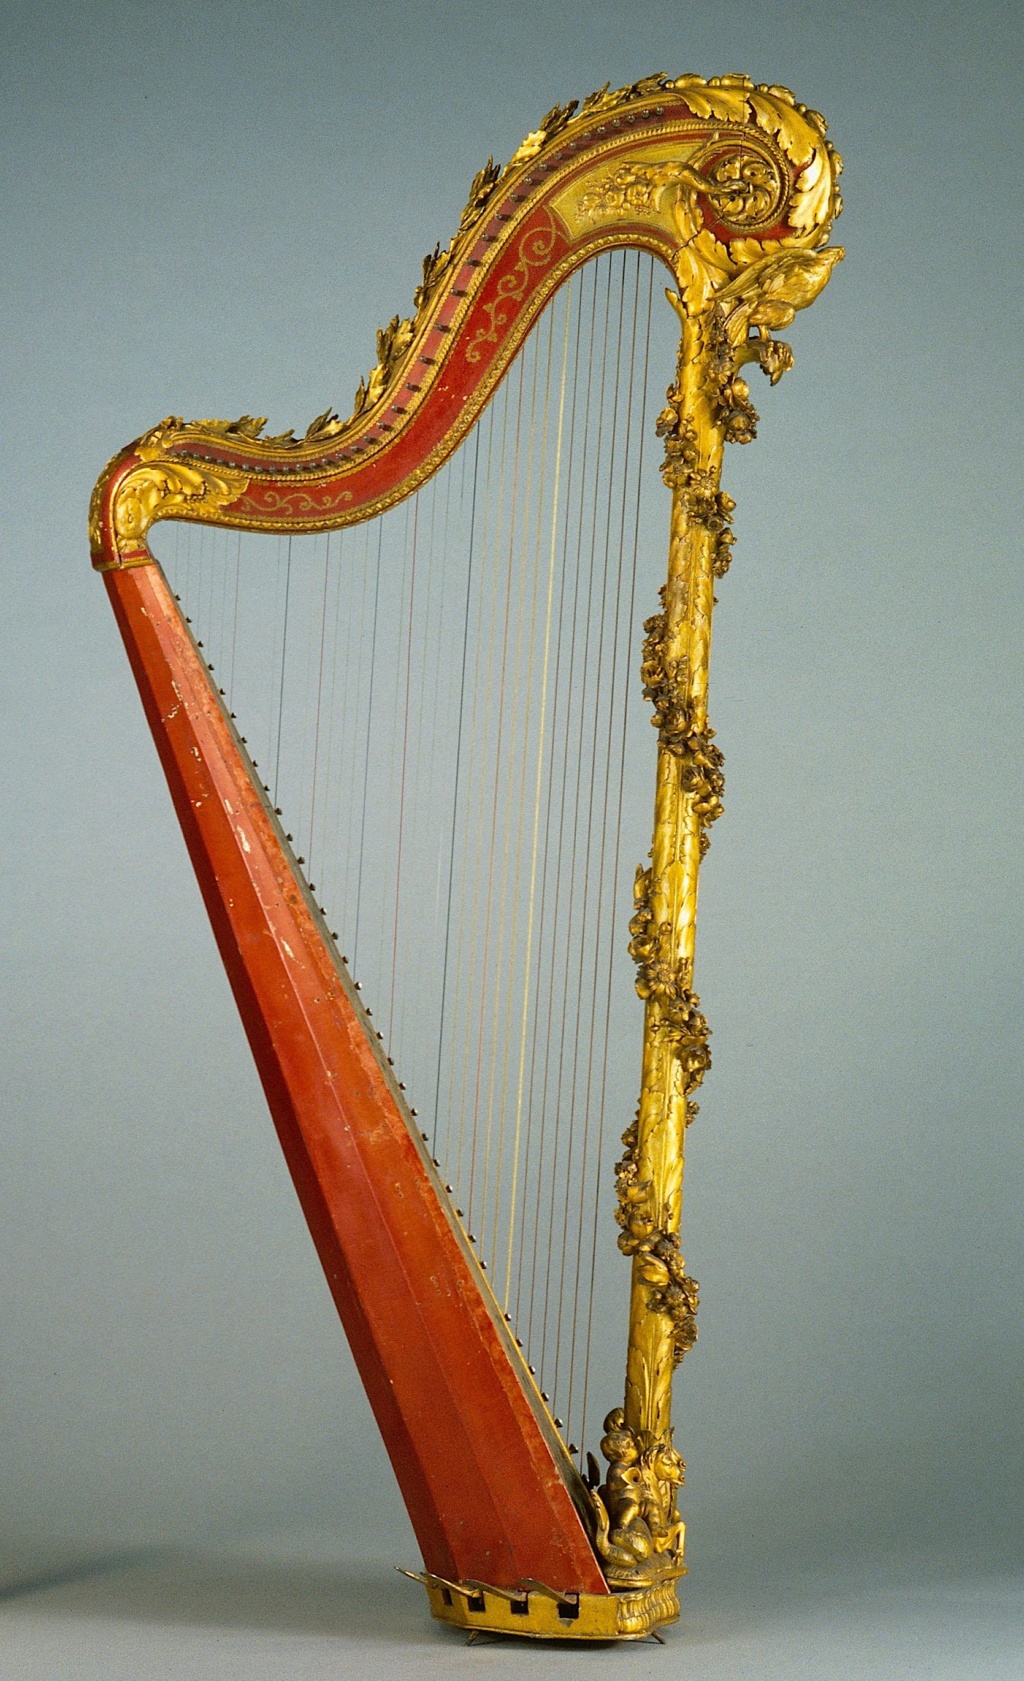 harpe - La harpe, ou les harpes, de Marie-Antoinette Harpe_16